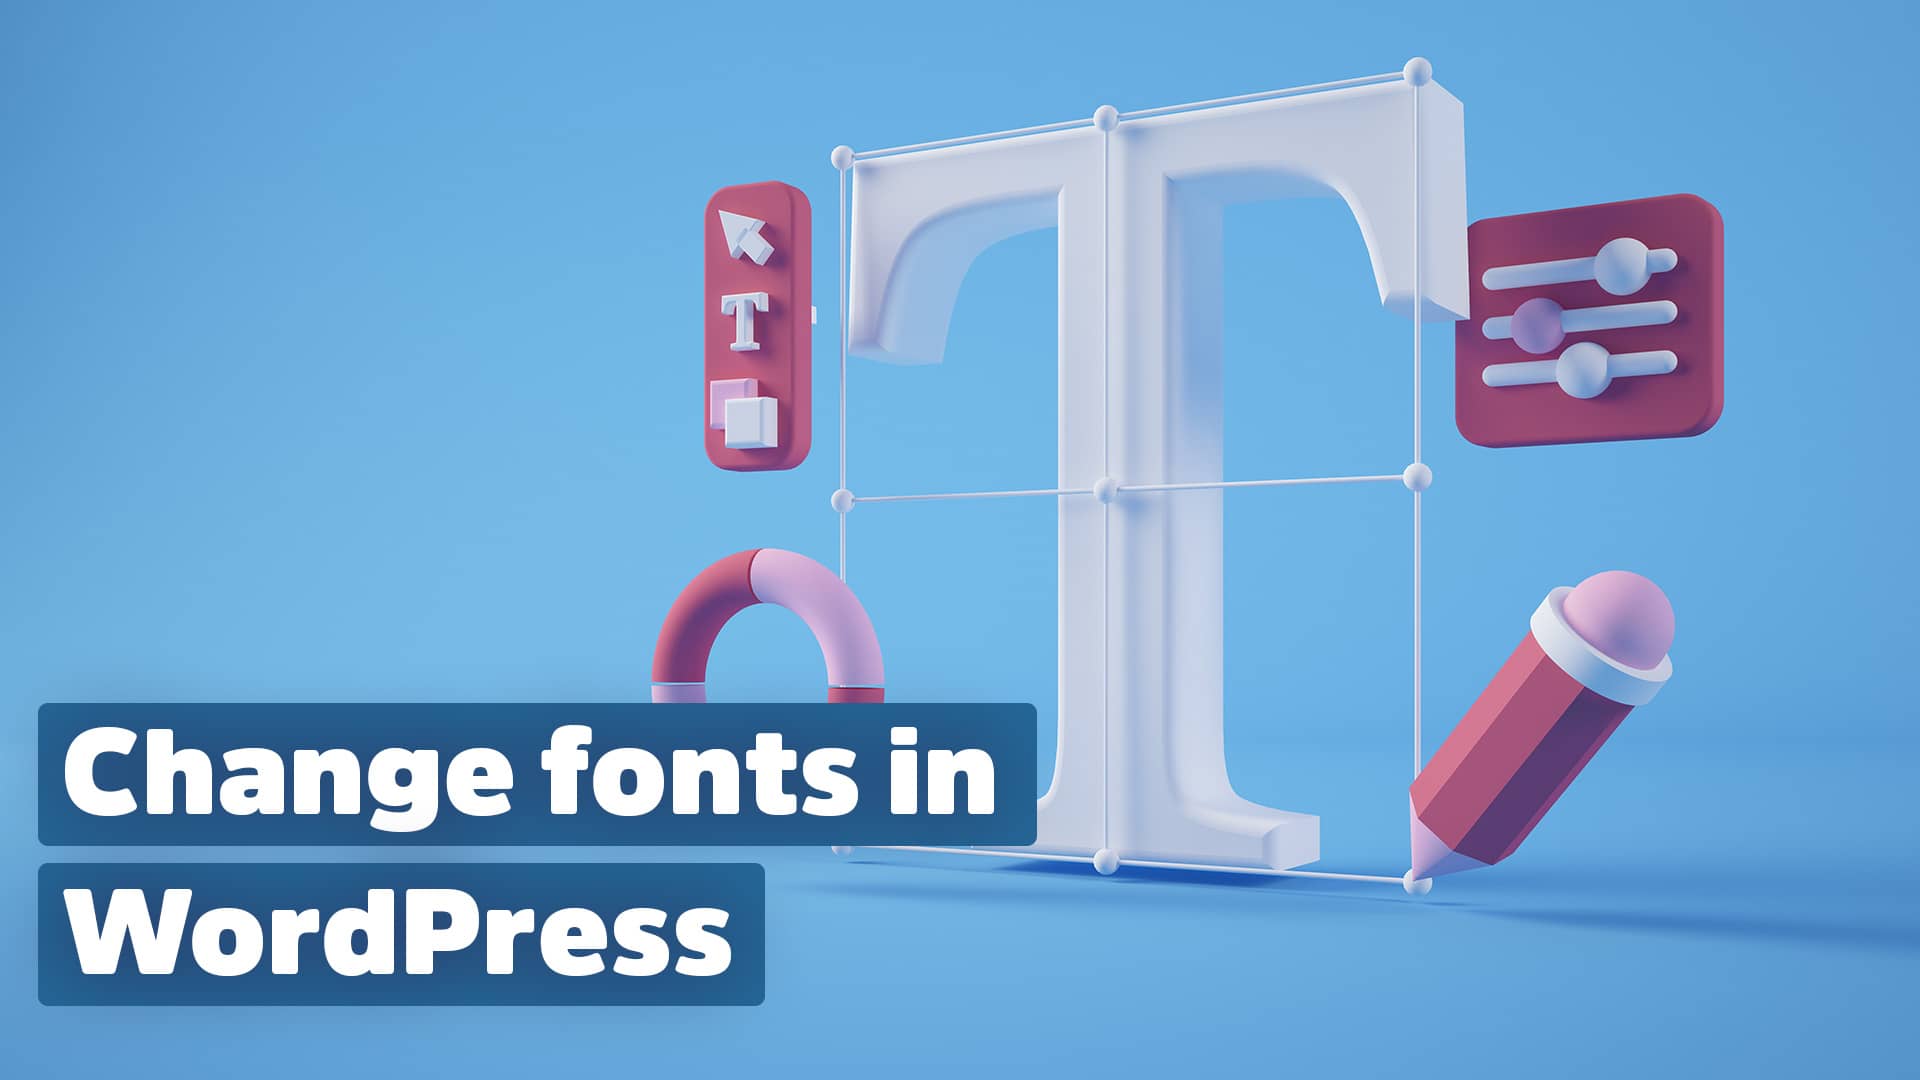 Change fonts in WordPress